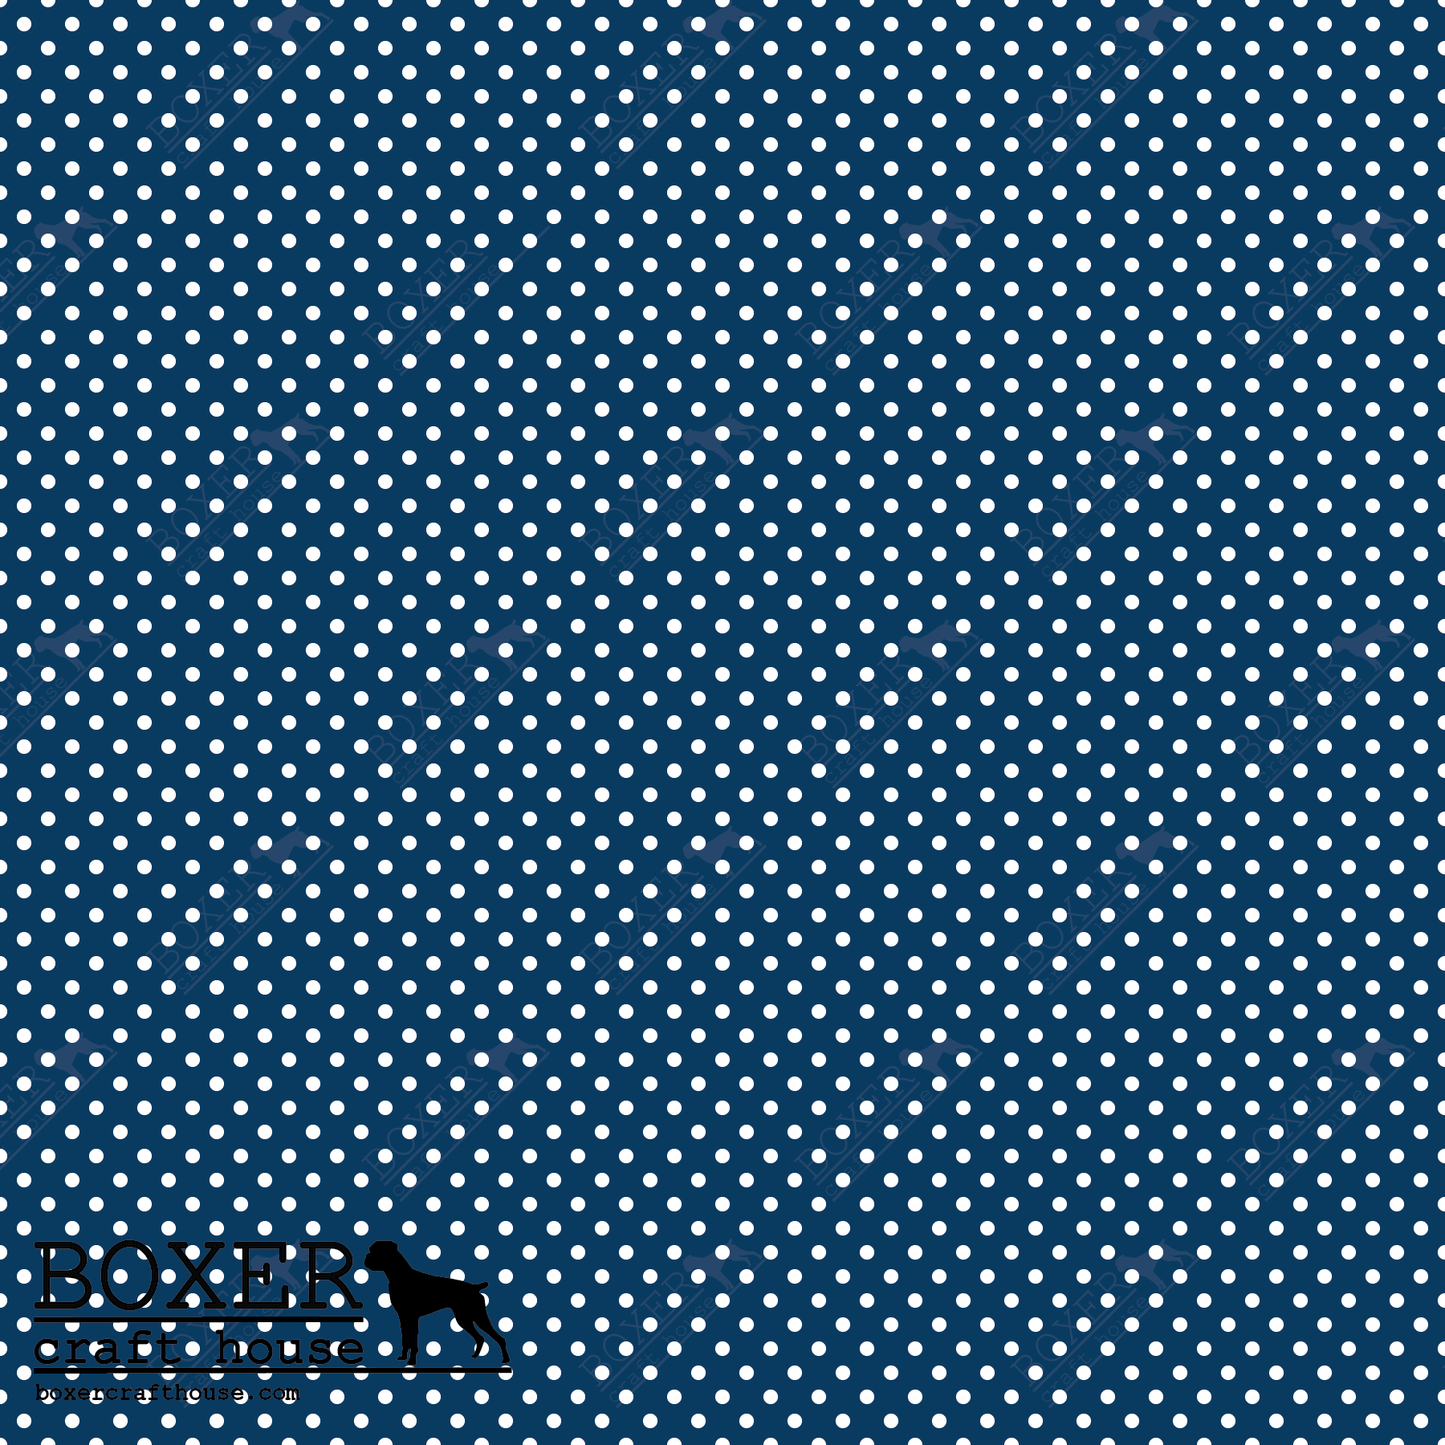 Dots 1/16" - Tardis Blue